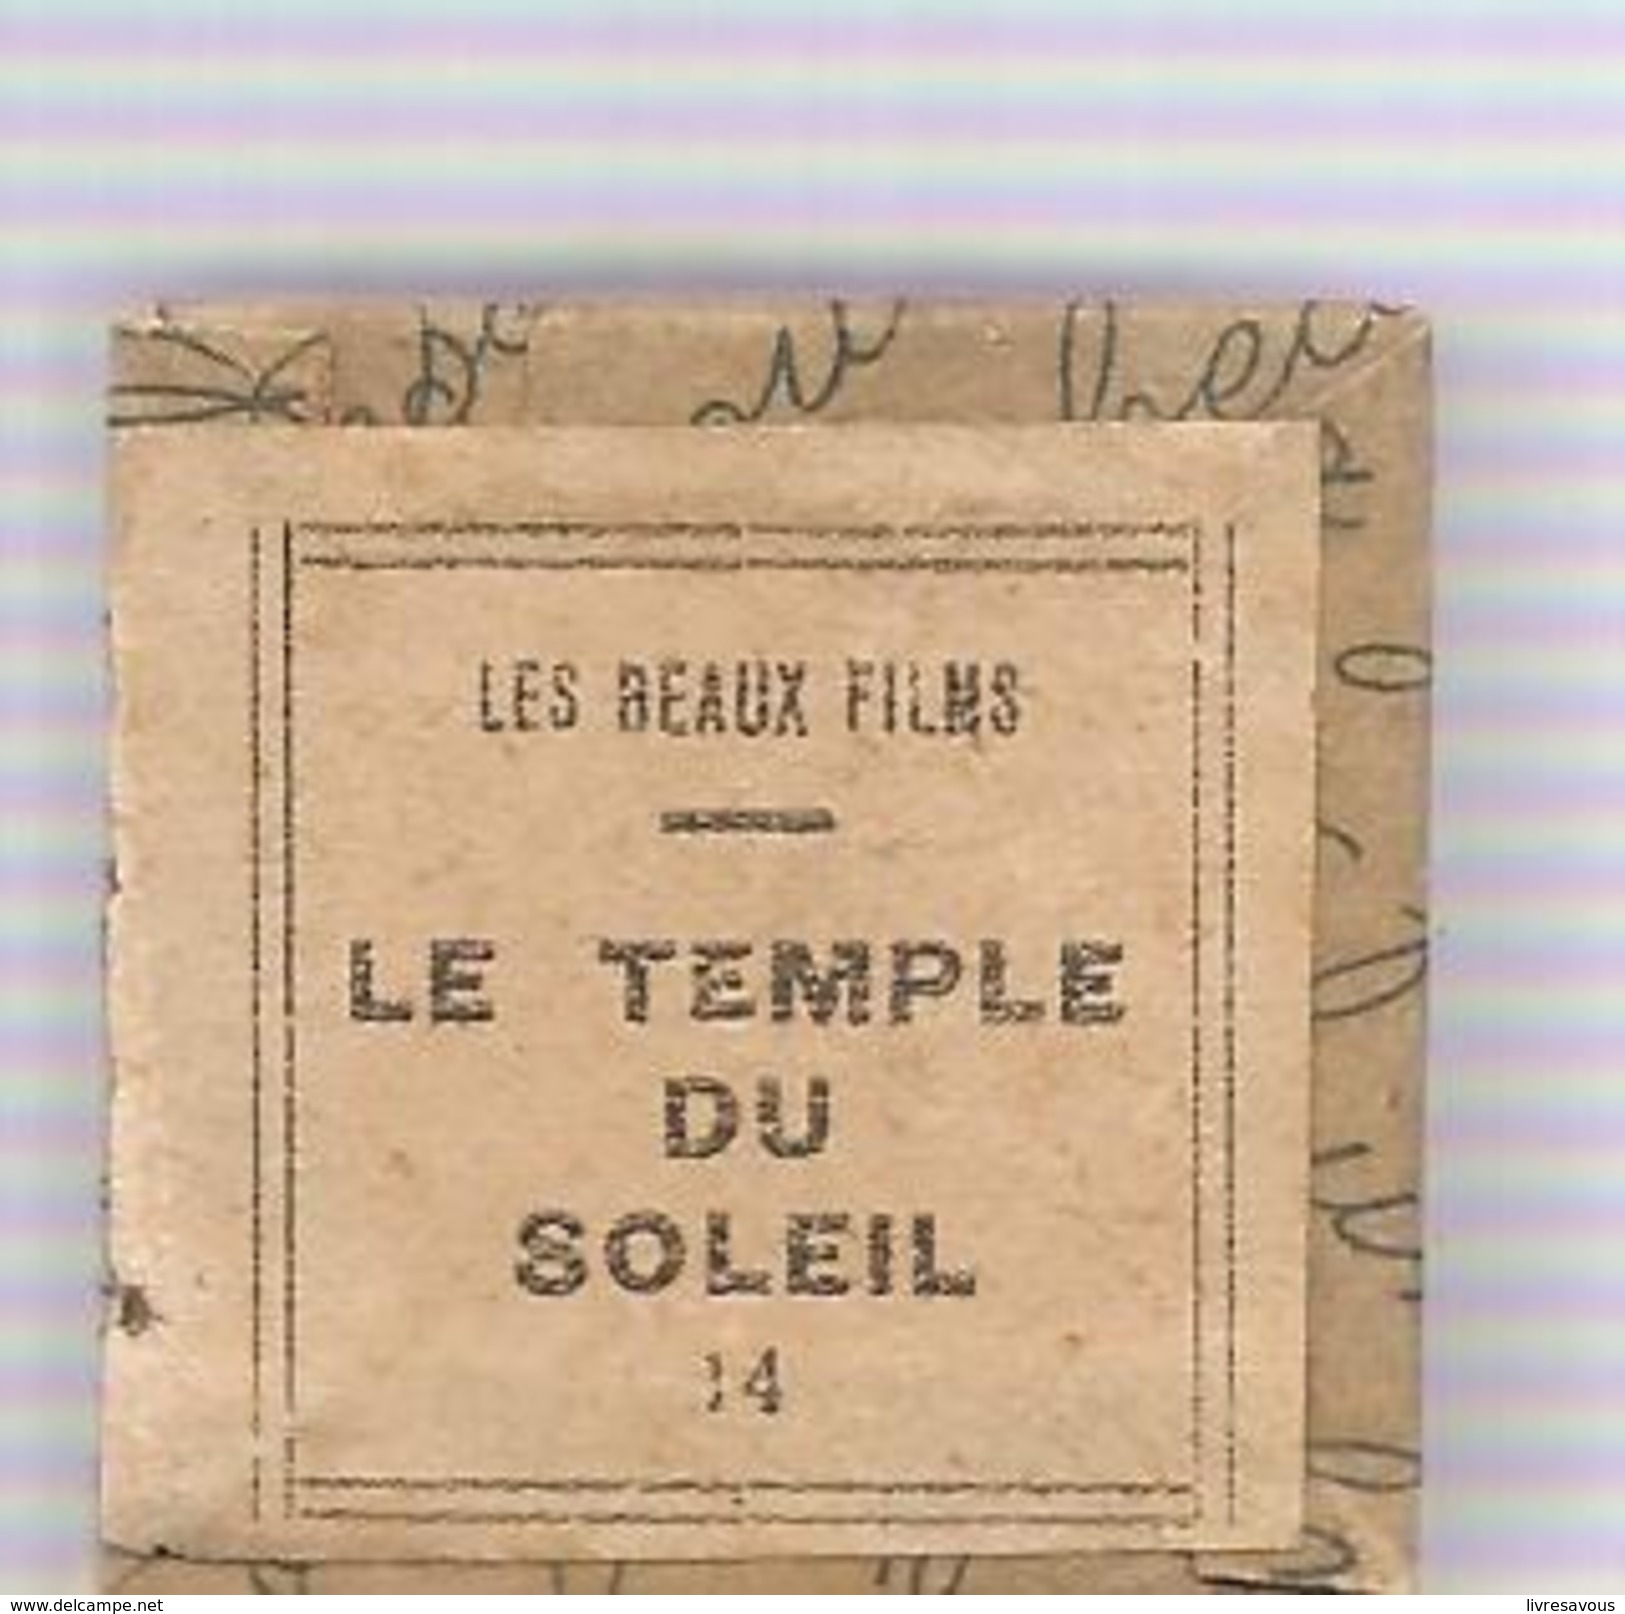 Hergé Film Fixe N°14 Tintin Et Le Temple Du Soleil D'Hergé Collection "Les Beaux Films" Des Années 1965 - 35mm -16mm - 9,5+8+S8mm Film Rolls